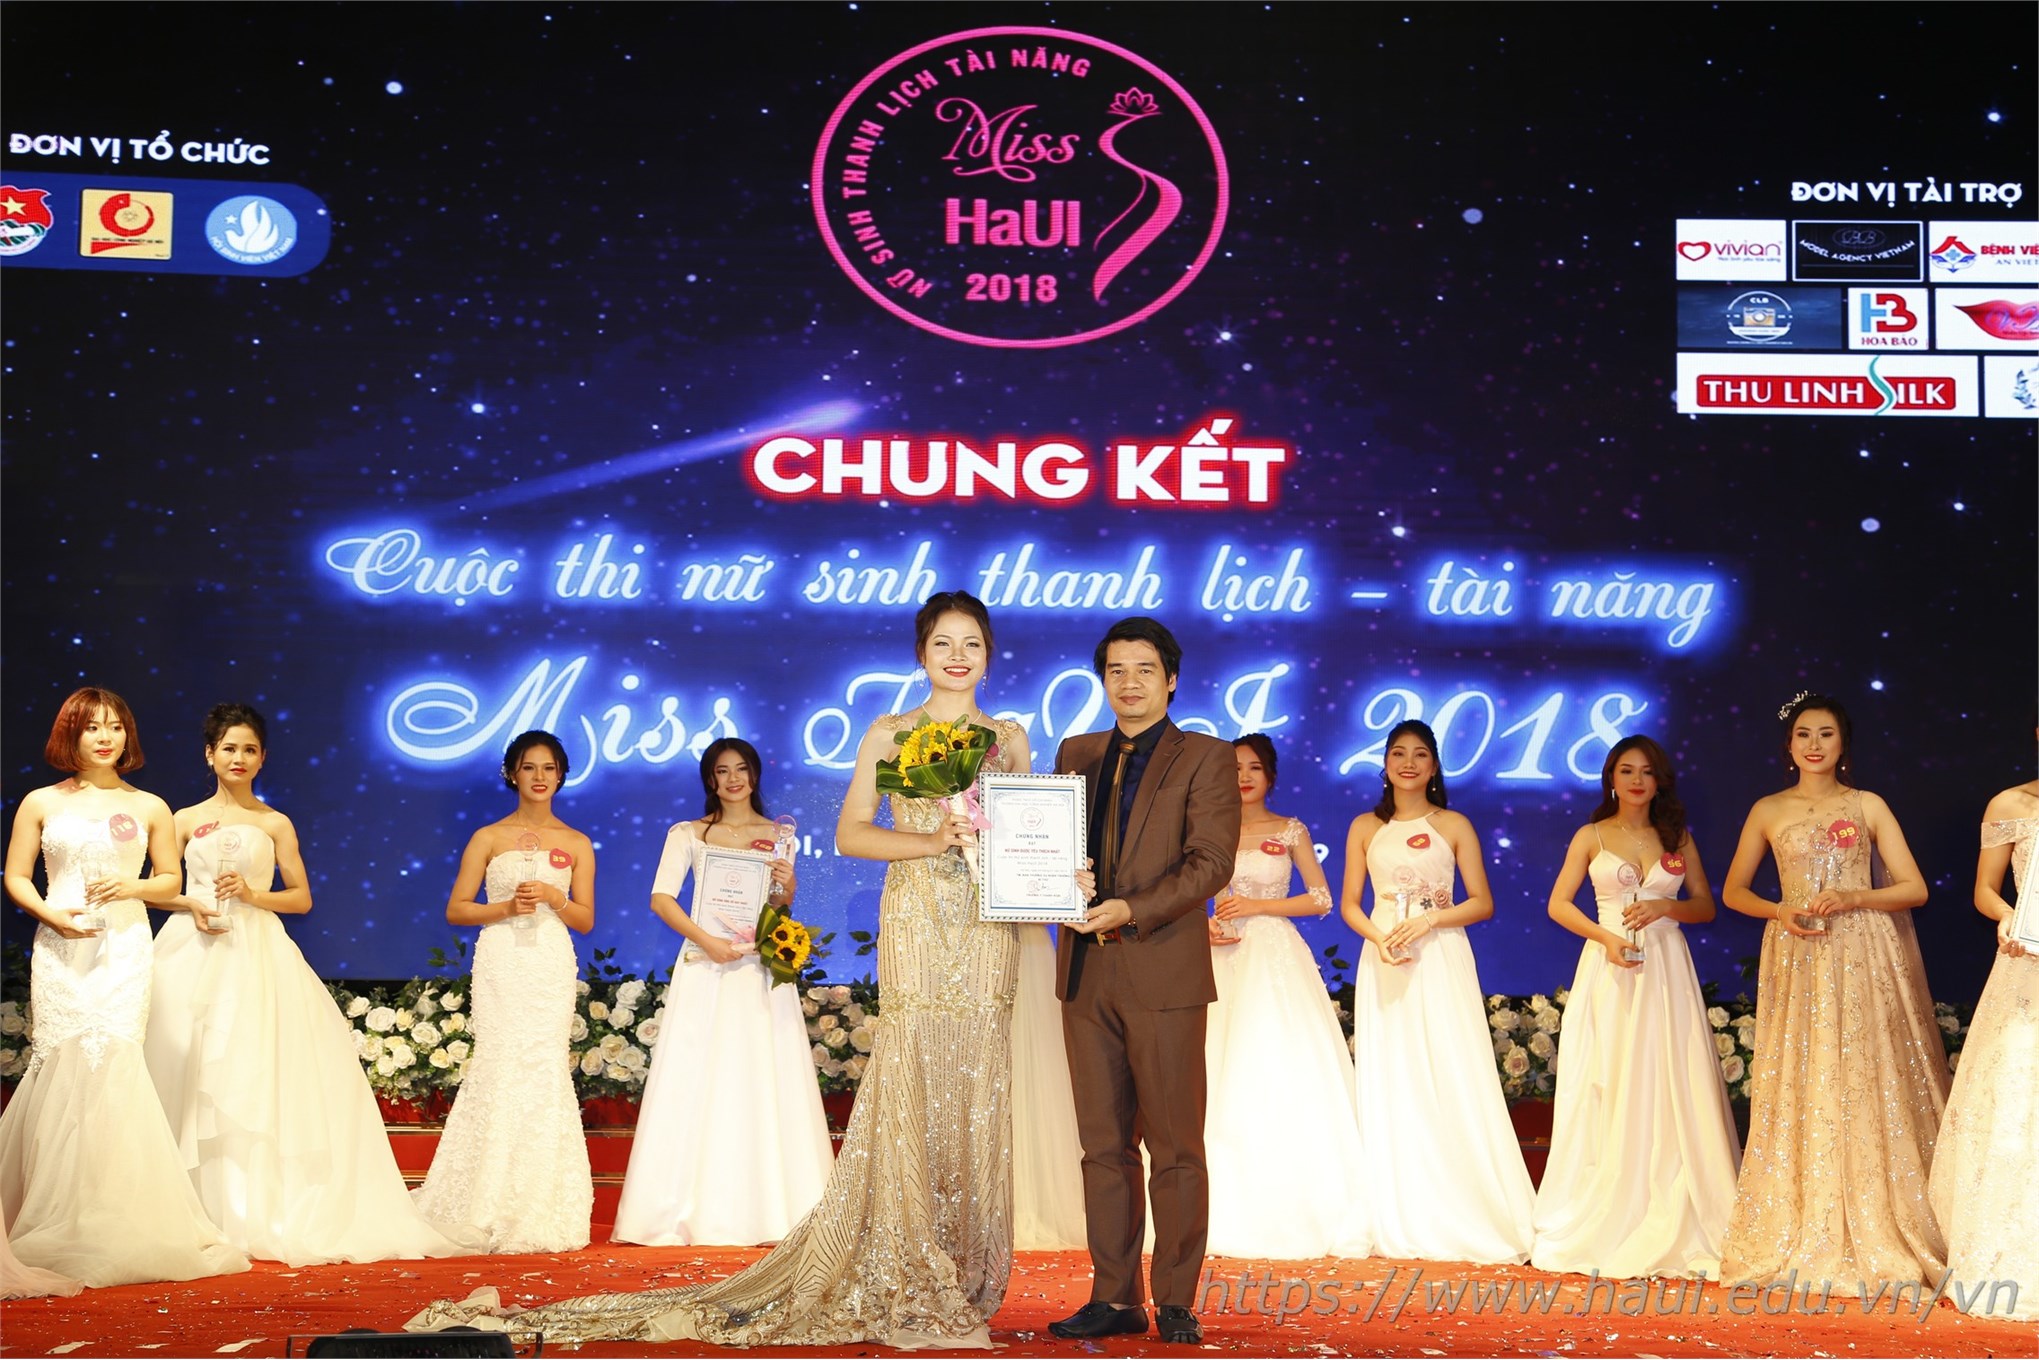 Chung kết Cuộc thi Nữ sinh thanh lịch - tài năng “Miss HaUI 2018”